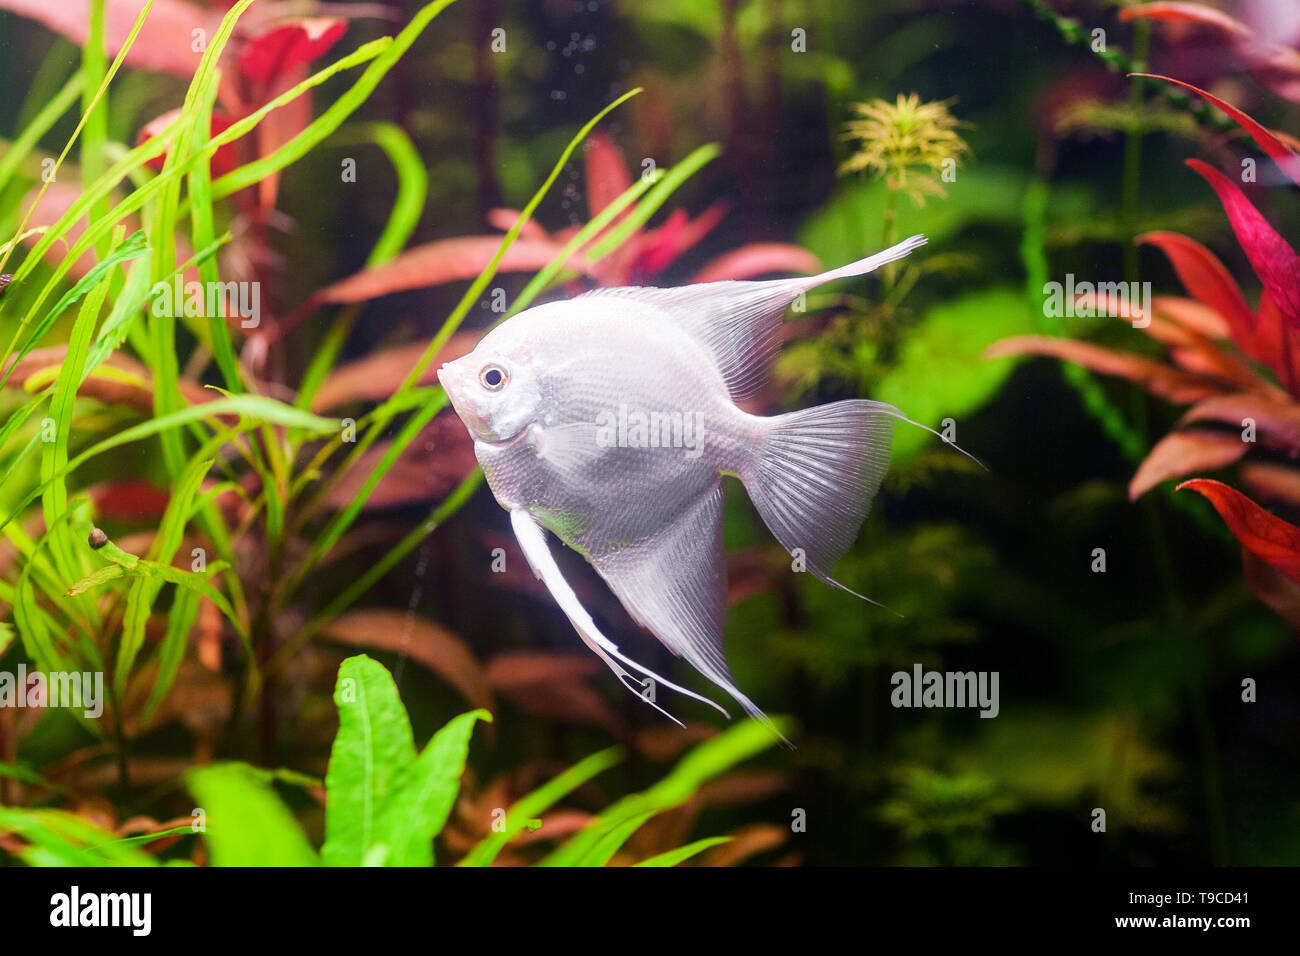 White Scalare Angelfish swimming underwater in beautiful fresh aquarium near green plant. Stock Photo